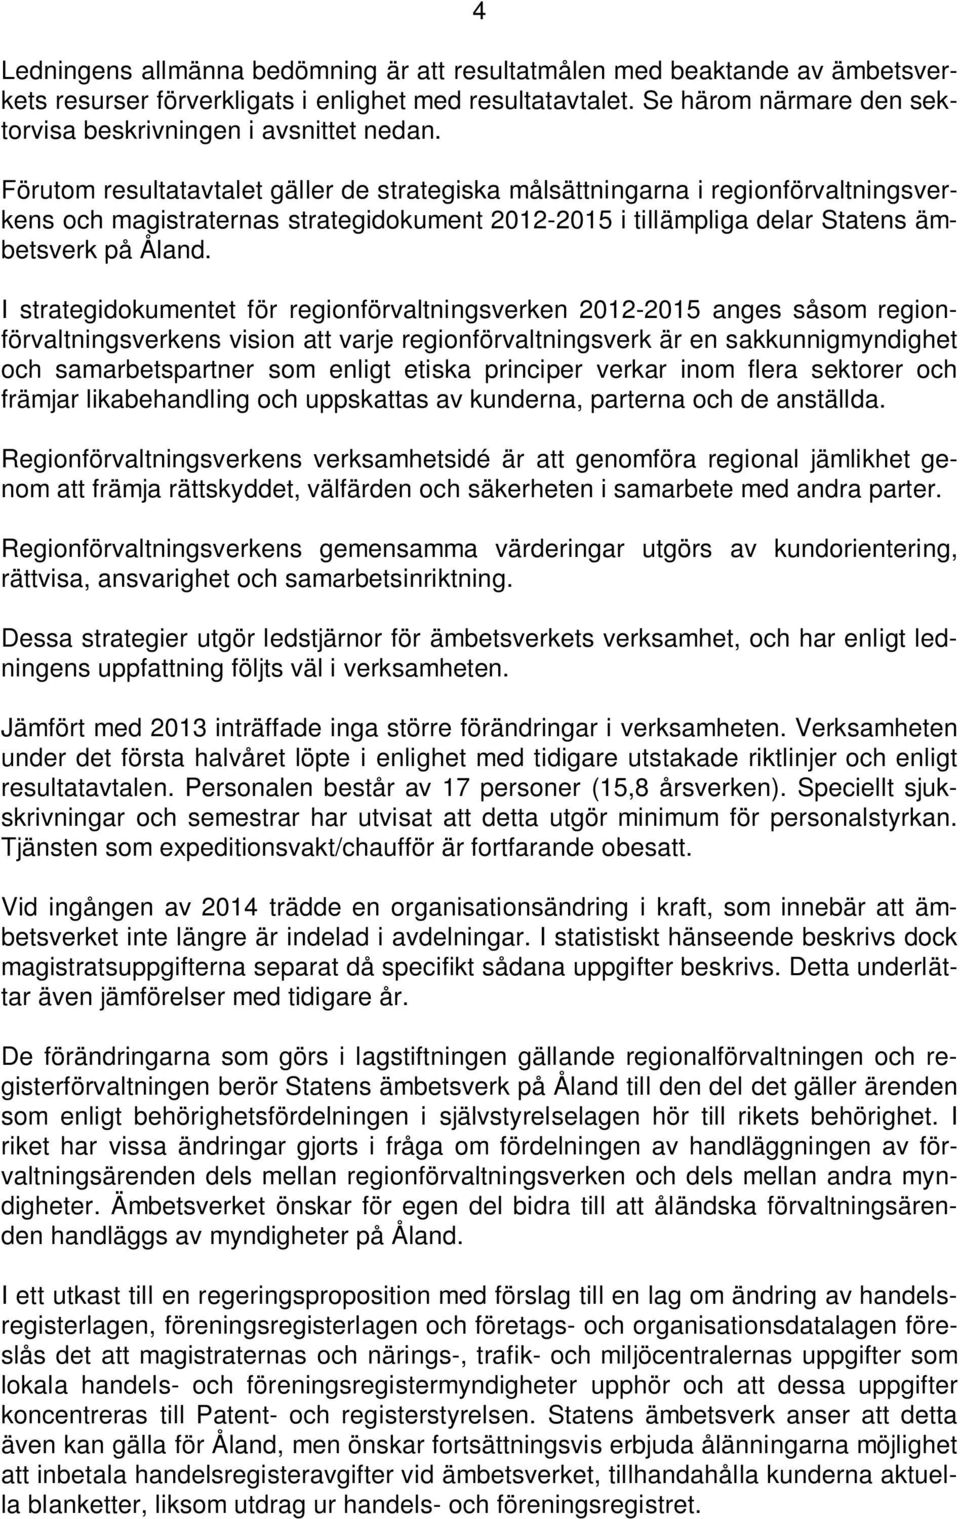 Förutom resultatavtalet gäller de strategiska målsättningarna i regionförvaltningsverkens och magistraternas strategidokument 2012-2015 i tillämpliga delar Statens ämbetsverk på Åland.